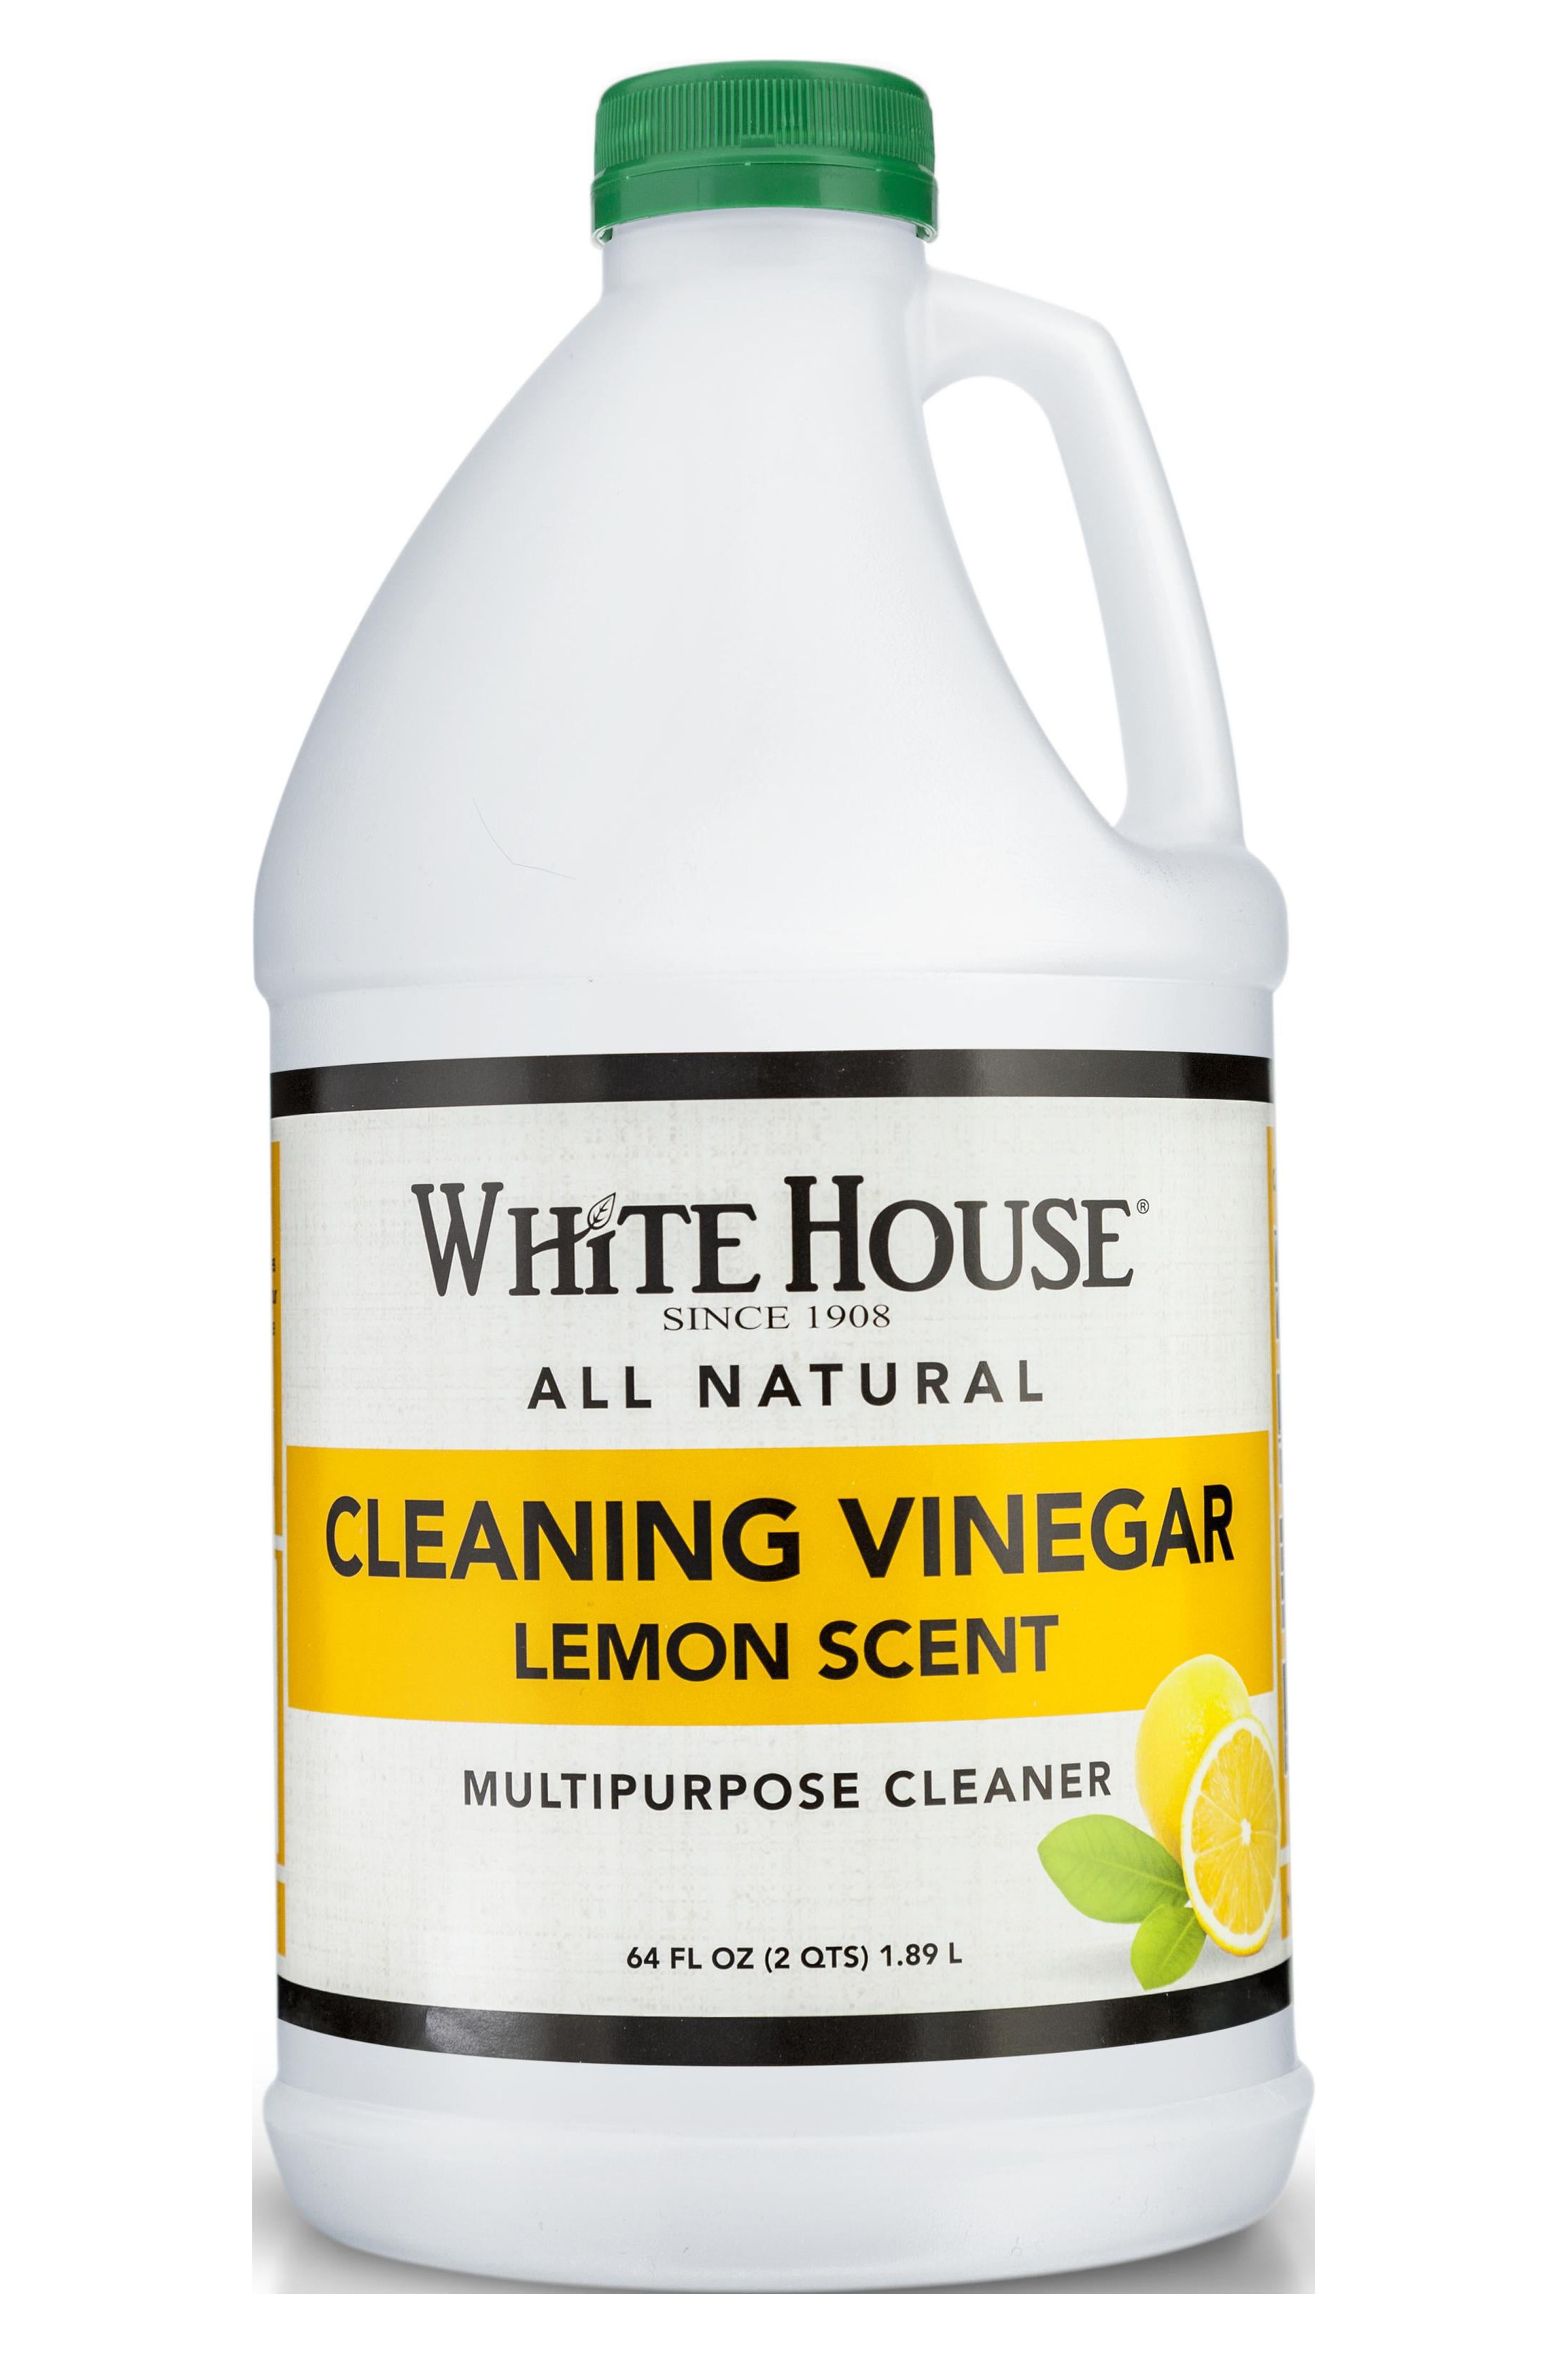 White House Cleaning Vinegar, Lemon Scent, 64 oz - image 1 of 4